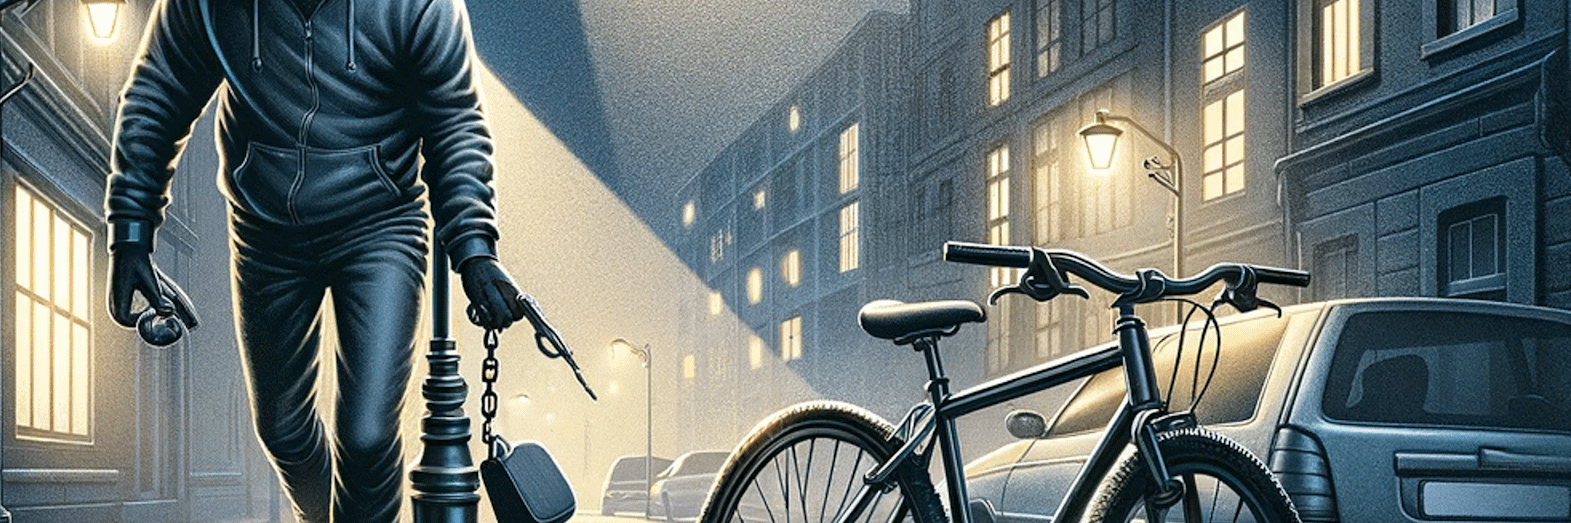 Beskyt din cykel mod tyveri | Låse og sikkerhed på Alex-cykler.dk